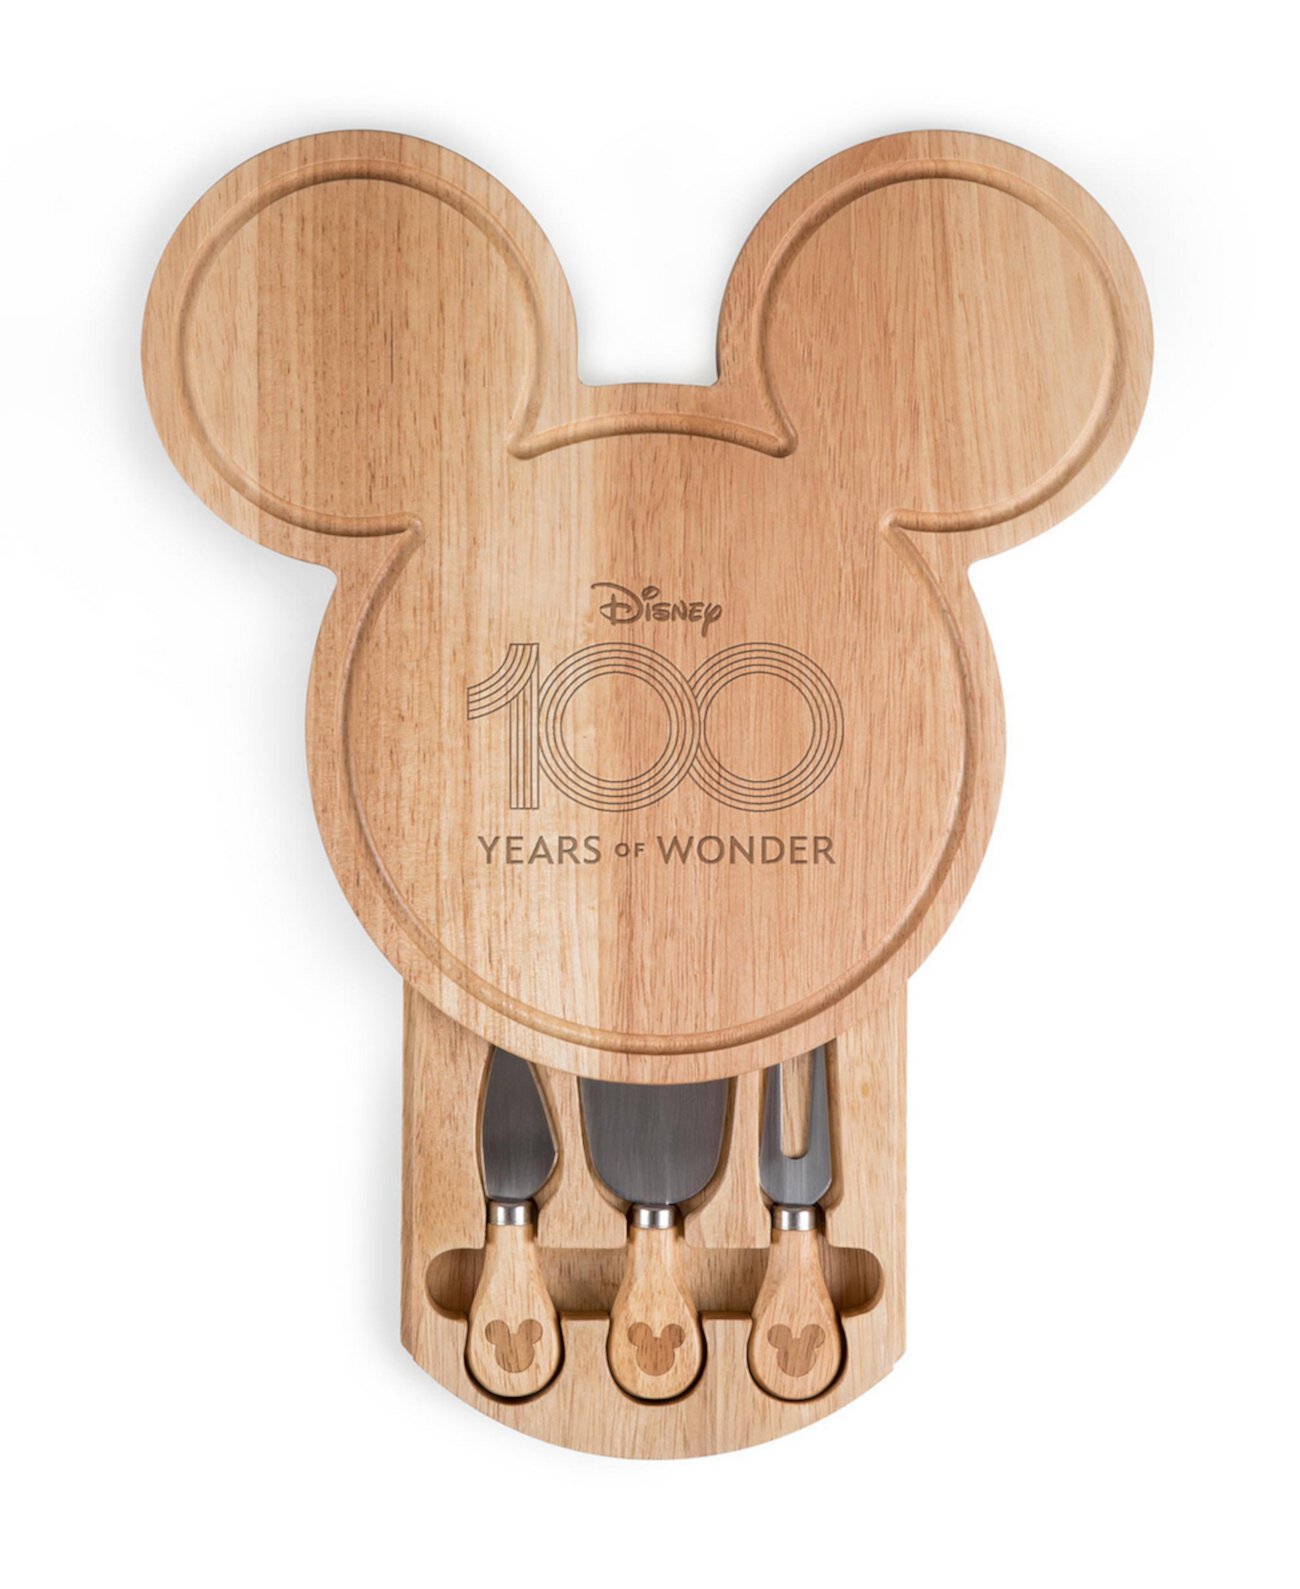 Доска для мясных закусок Disney 100 с Микки Маусом и набором ножей для сыра TOSCANA